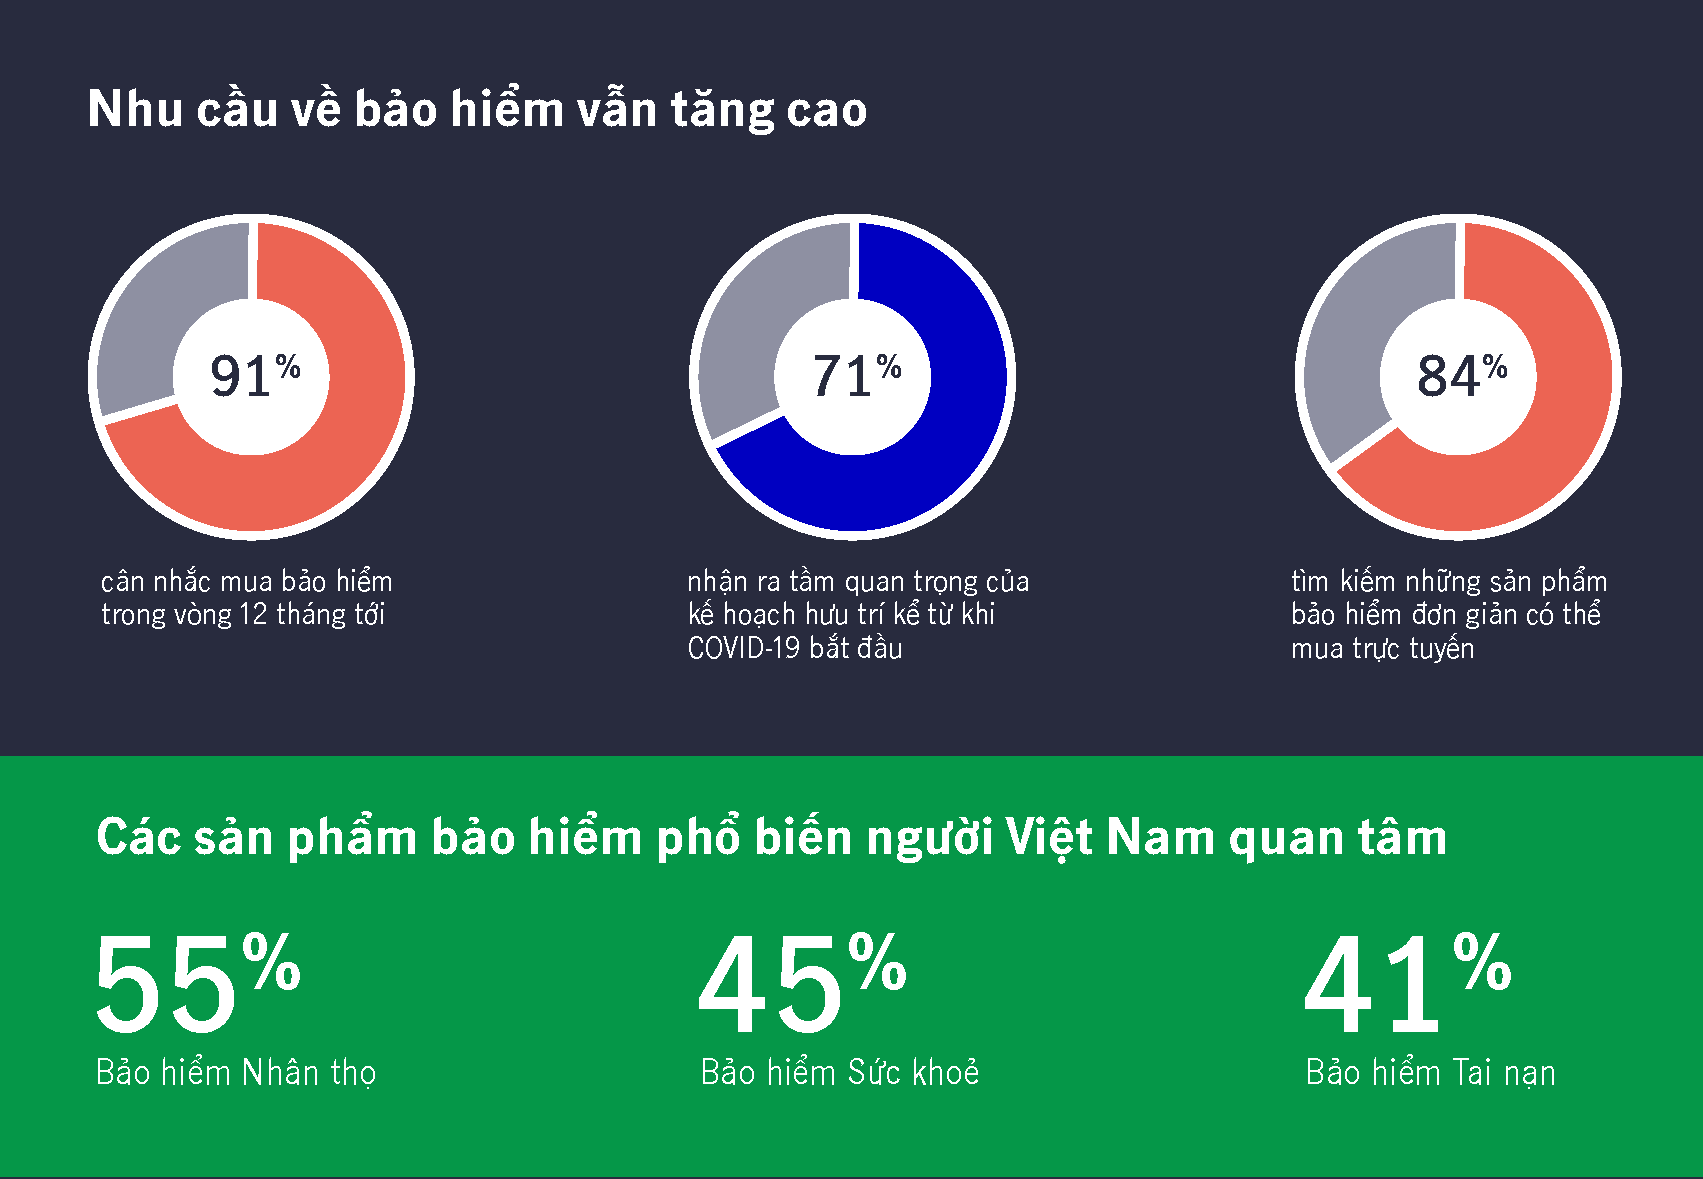 Người Việt Nam ngày càng quan tâm đến nhu cầu bảo vệ sức khỏe